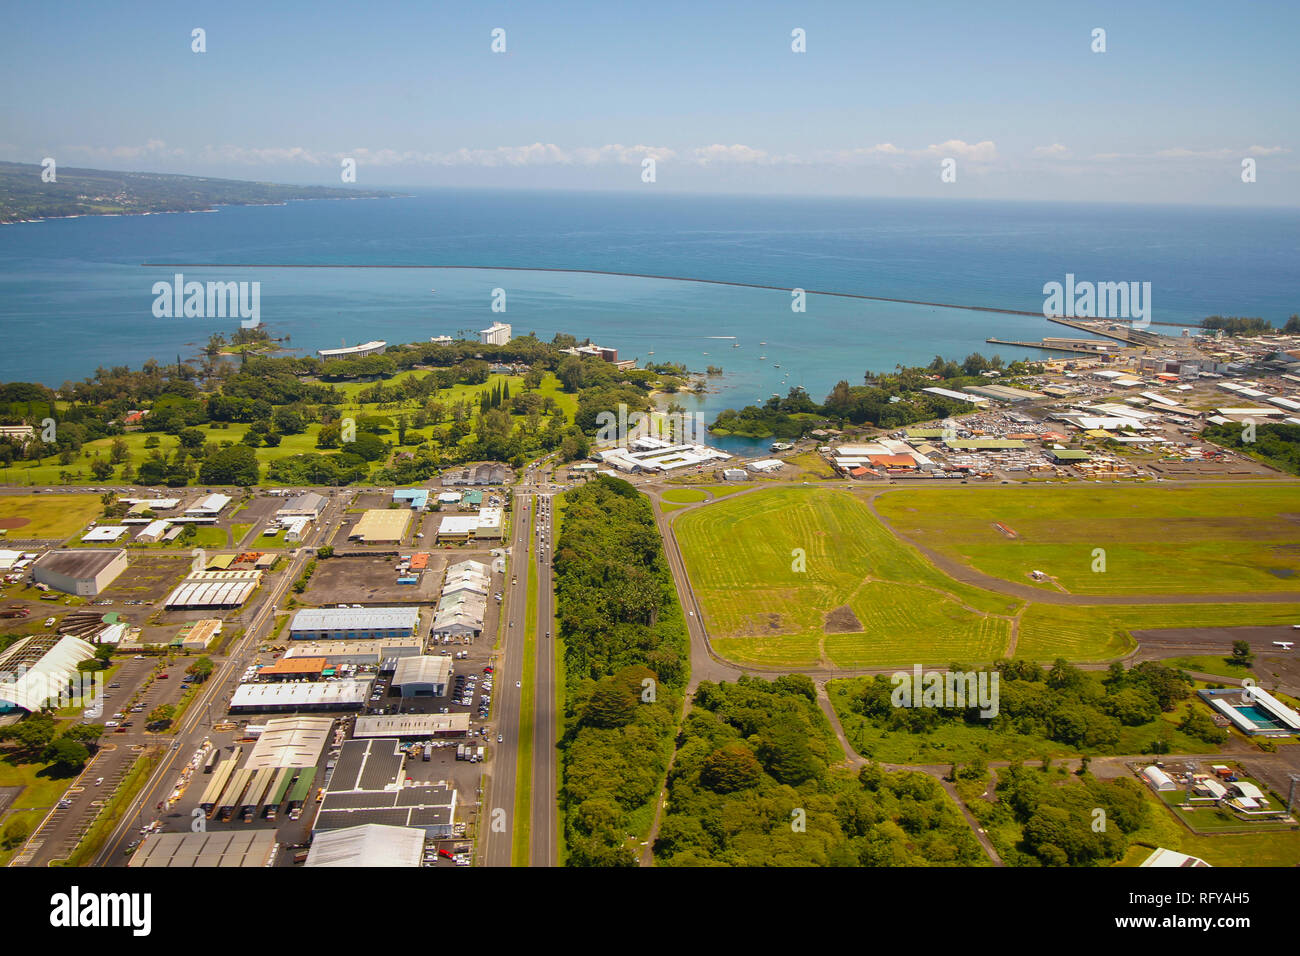 Vue aérienne de Hilo, l'une des villes les plus grandes à Big Island, Hawaii Banque D'Images